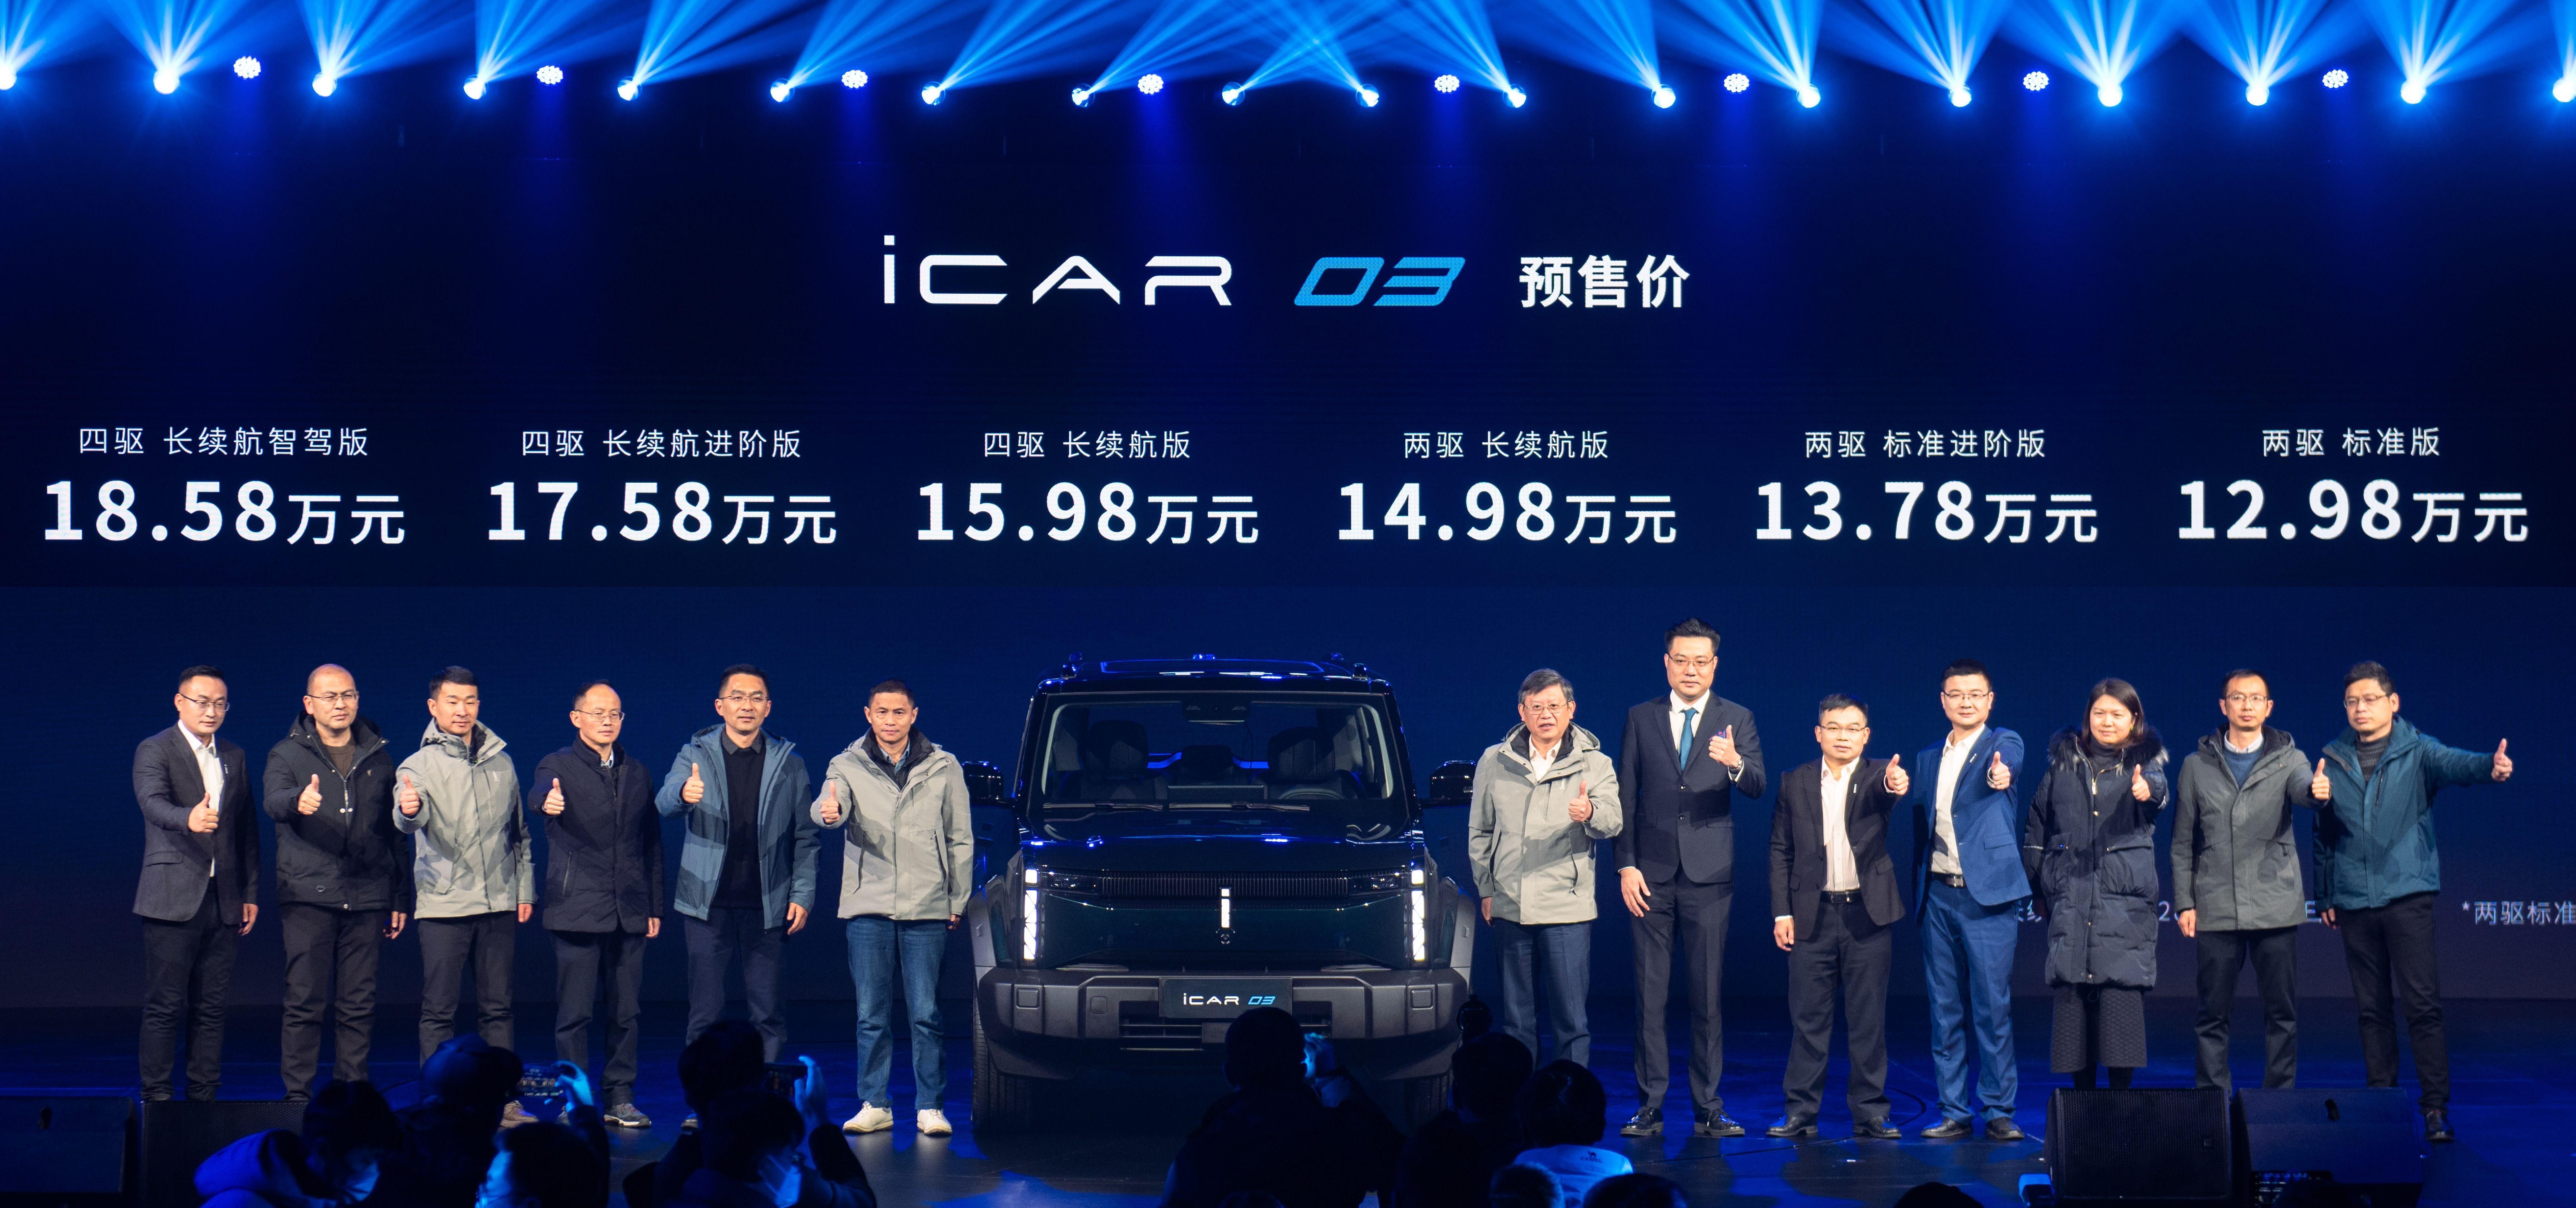 奇瑞汽车新能源车型iCAR 03全球预售开启，引领潮流新体验